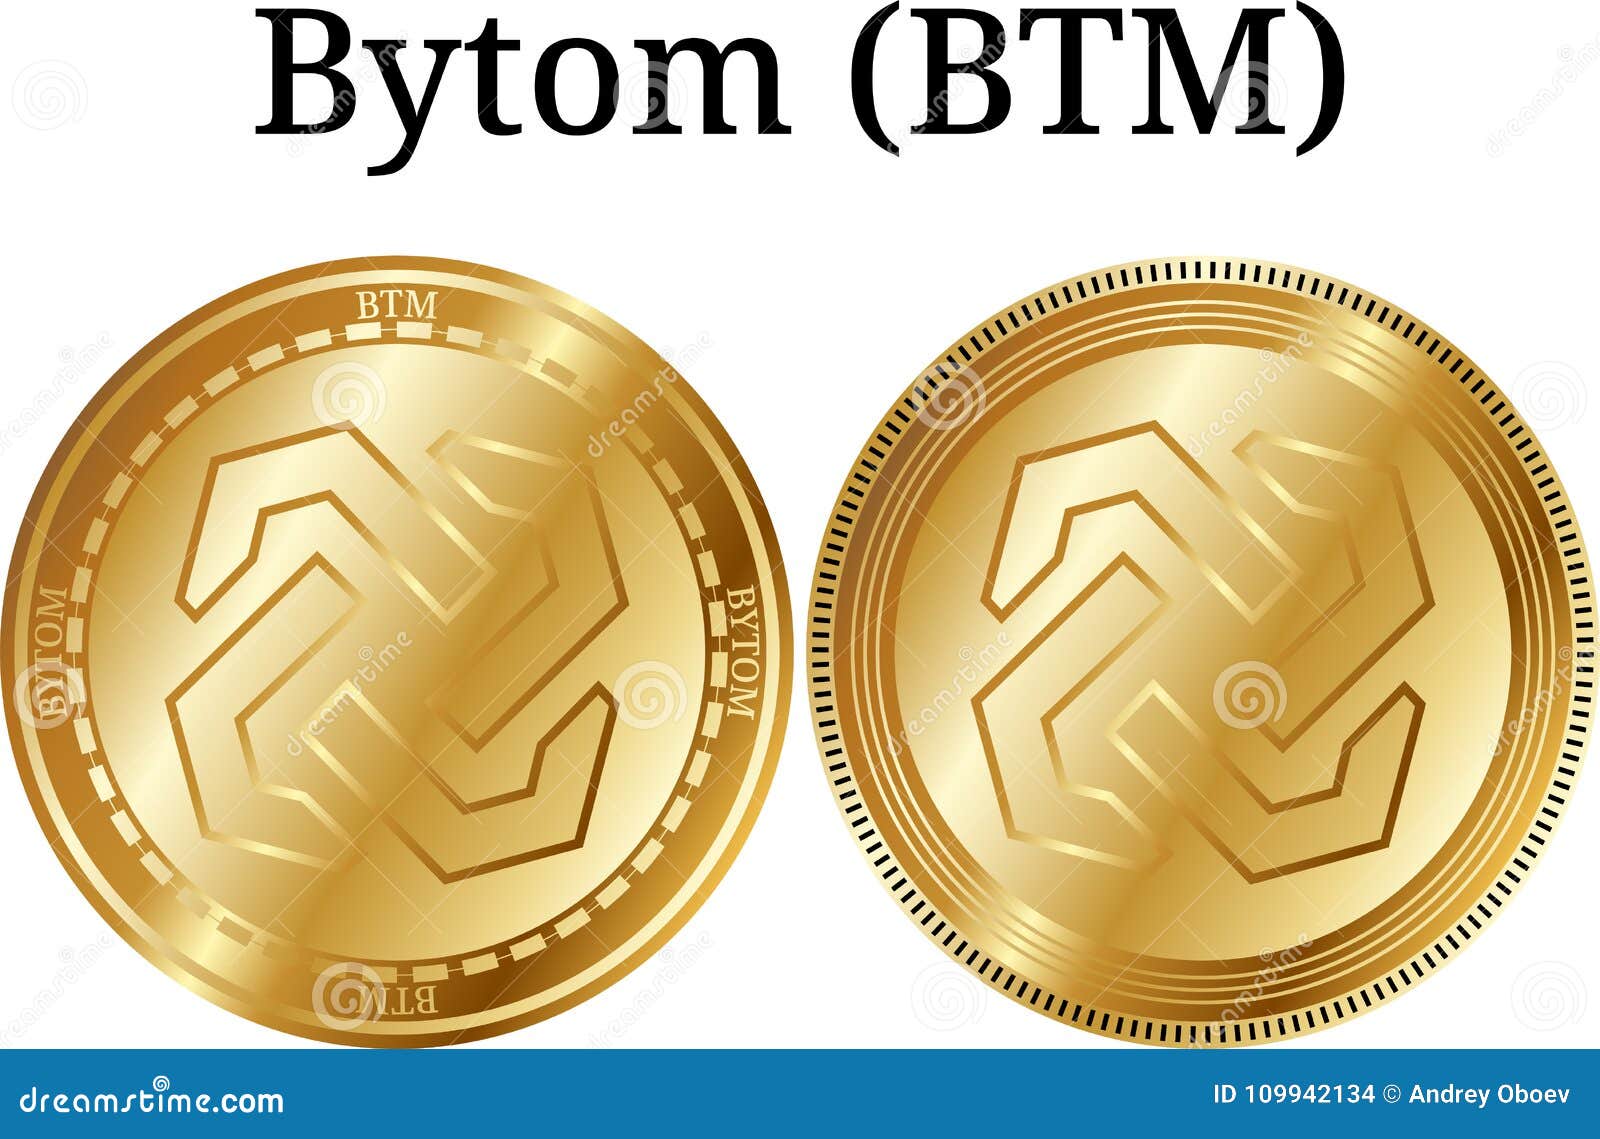 bytom crypto coin